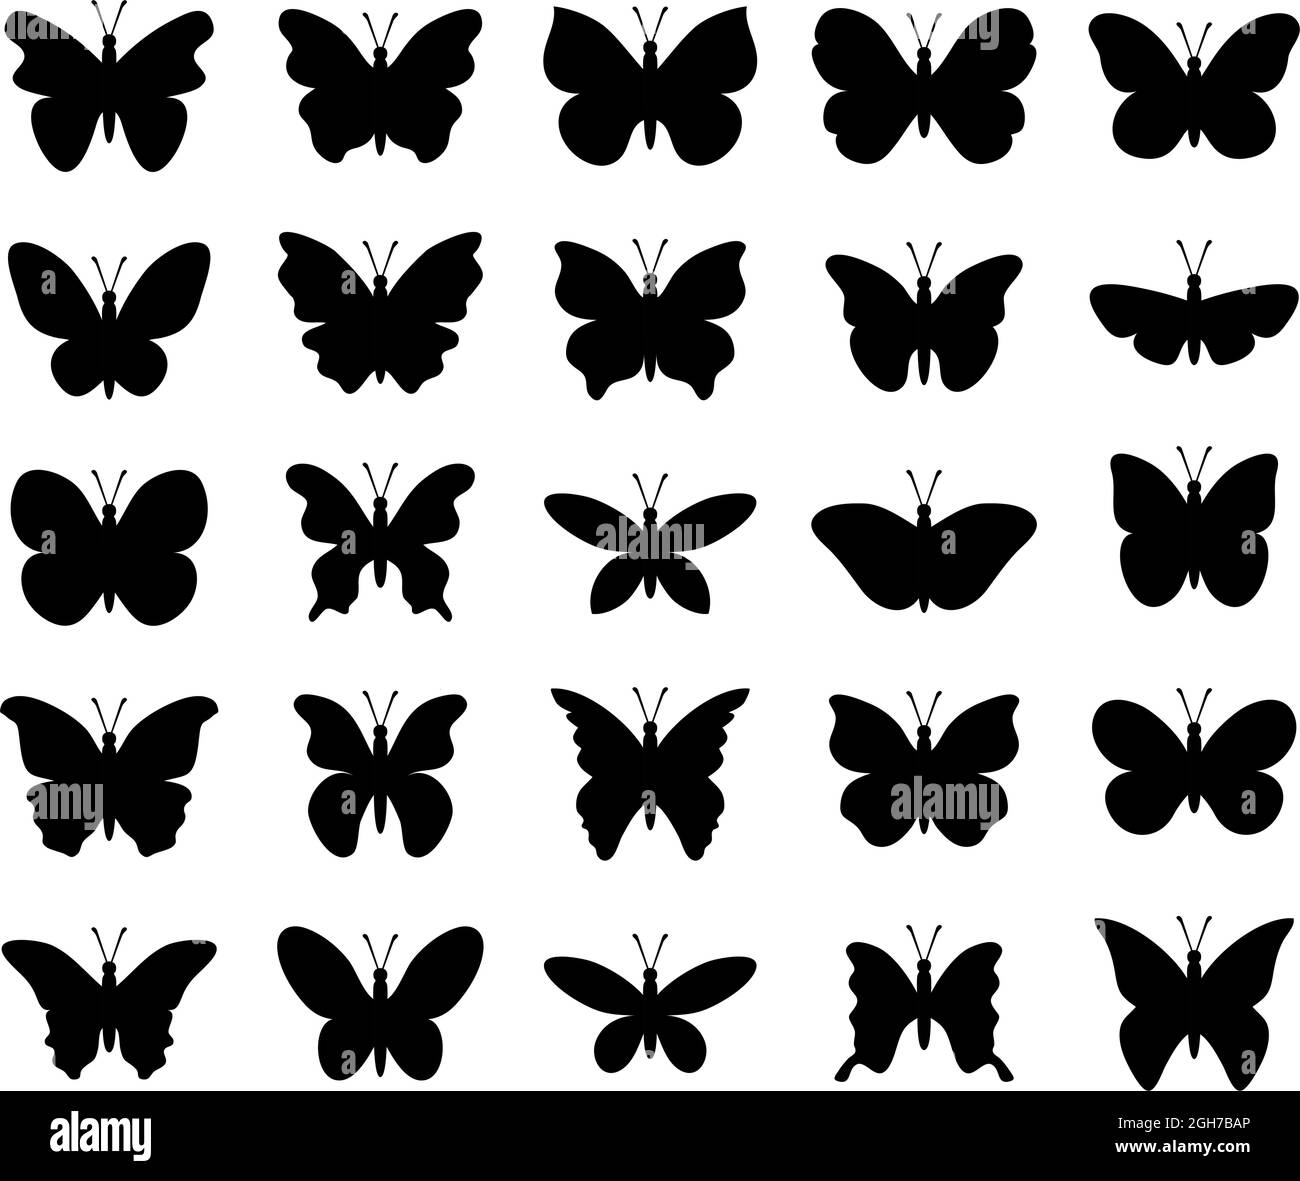 bellissime icone di insetti a farfalla vettoriali isolate su sfondo bianco. silhouette di farfalle tropicali. illustrazione della natura estiva Illustrazione Vettoriale